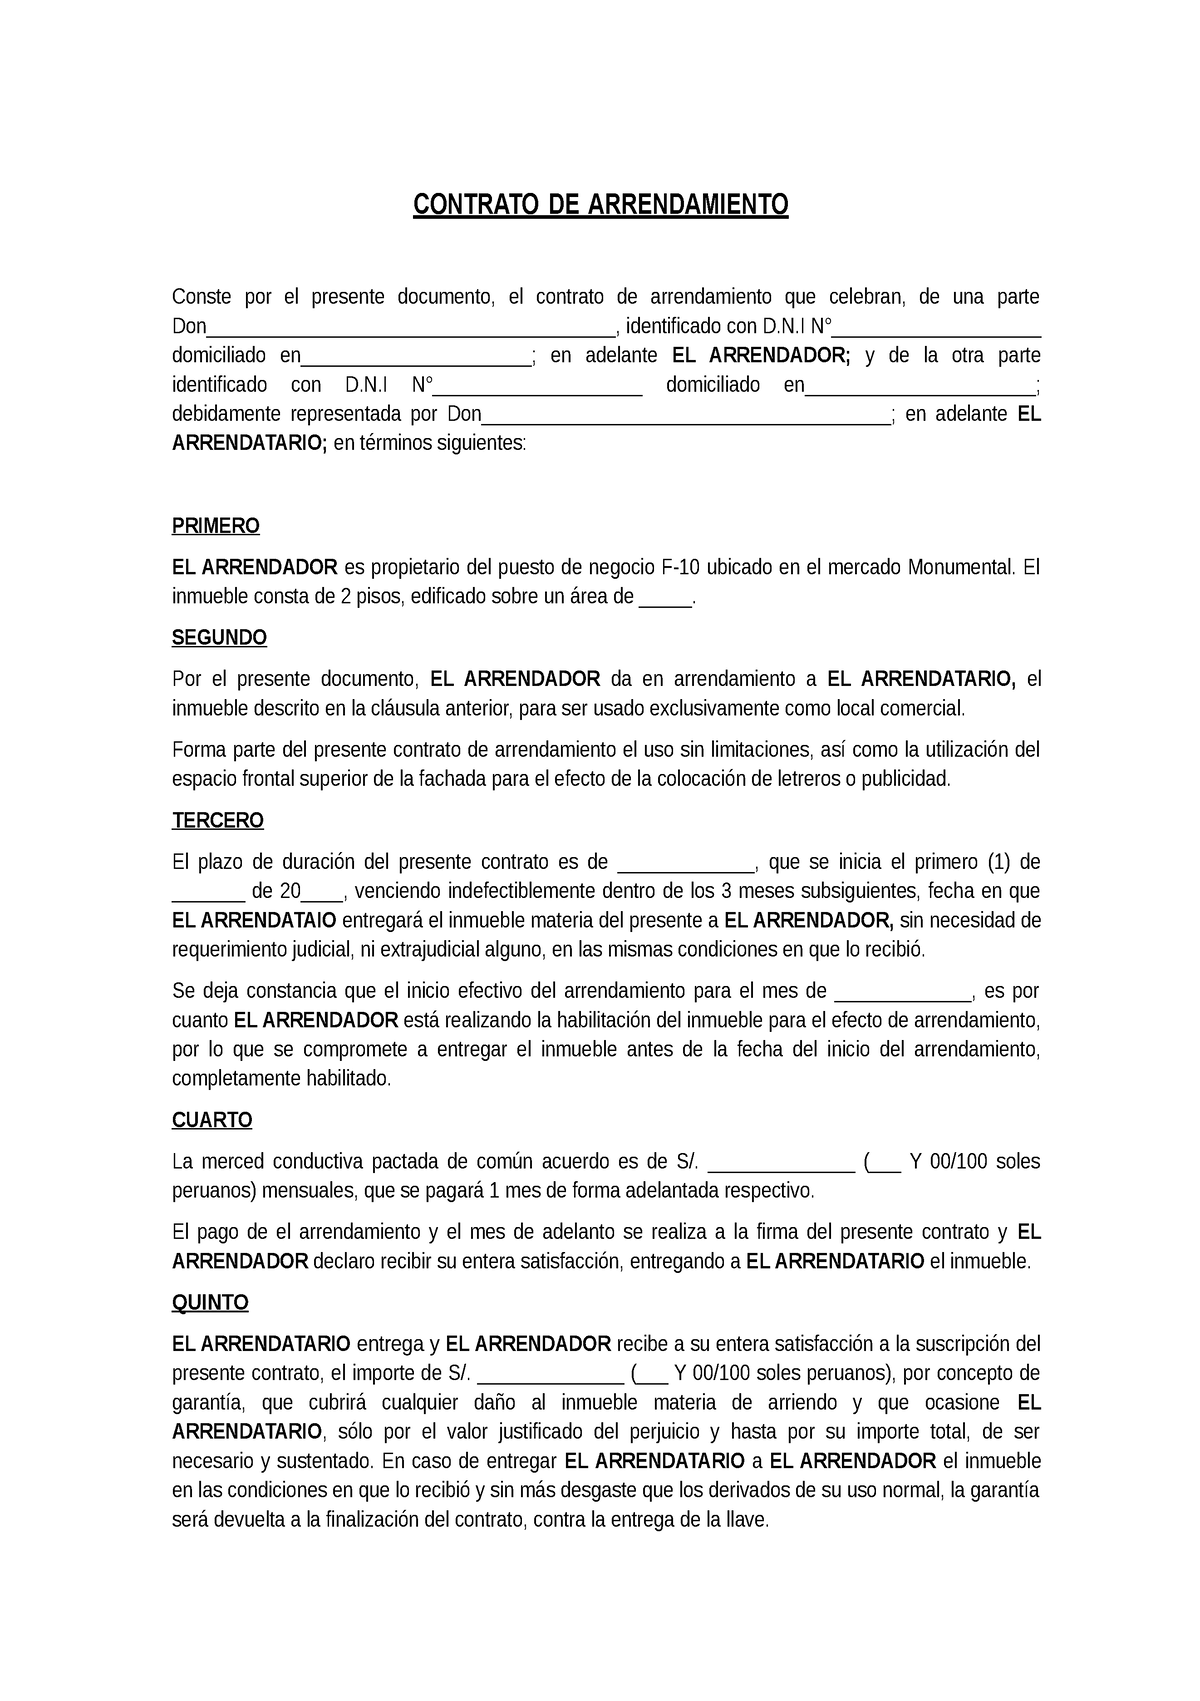 Contrato-de-arrendamiento - Derecho comercial y laboral - UPN - Studocu